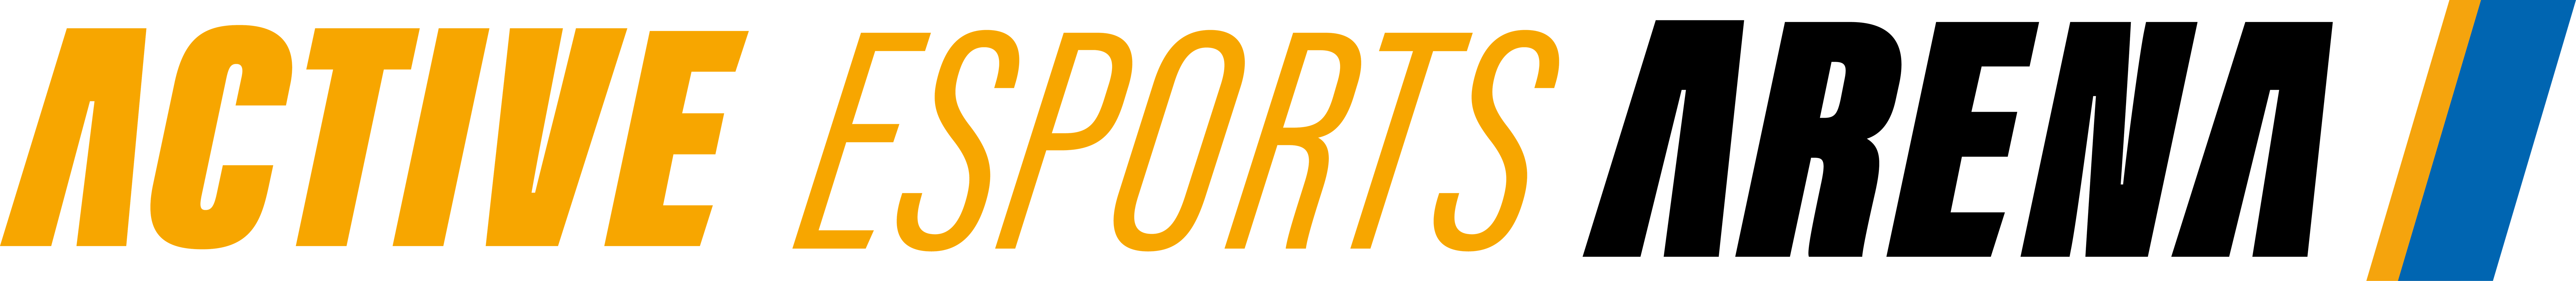 Active Esports Arena (AEA) logo